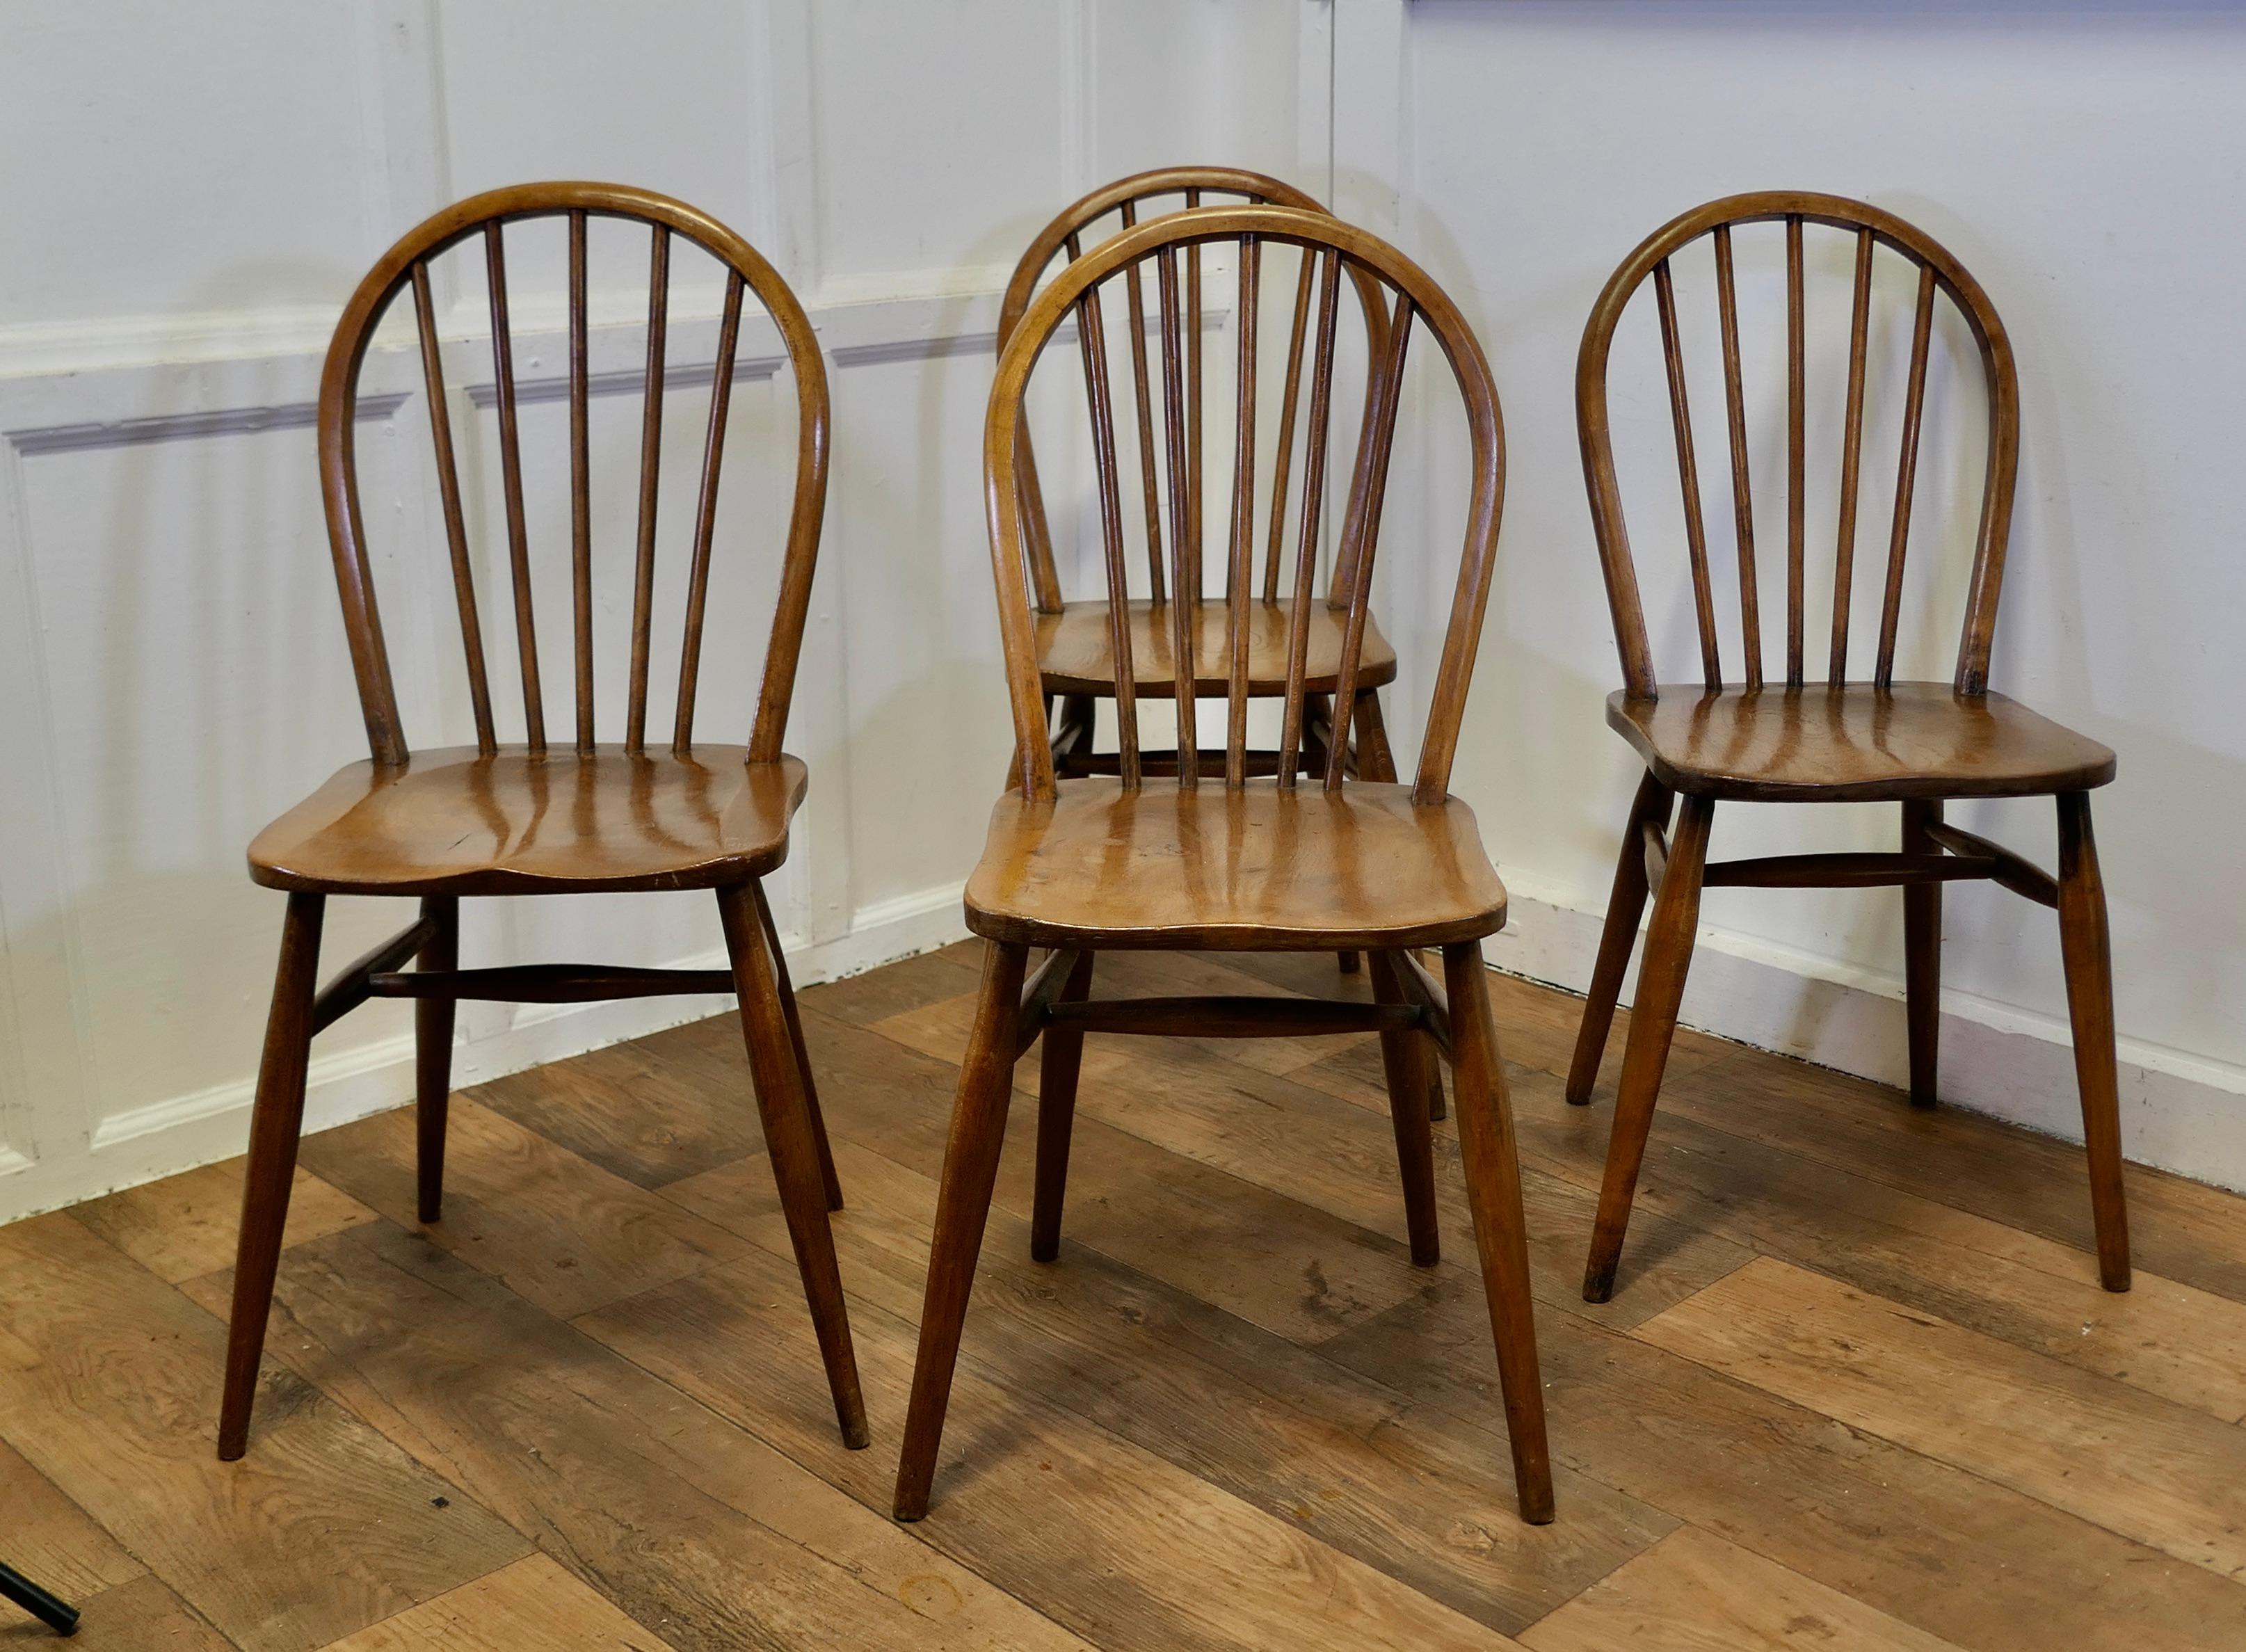 4 Stühle aus goldener Buche und Ulme Windsor Country Dining Chairs 

Die Stühle sind von hervorragender Qualität, sie sind handwerklich hergestellt und sind sehr geräumig und bequem Die Stühle sind aus massivem Ulmenholz mit einem Bügelrücken und